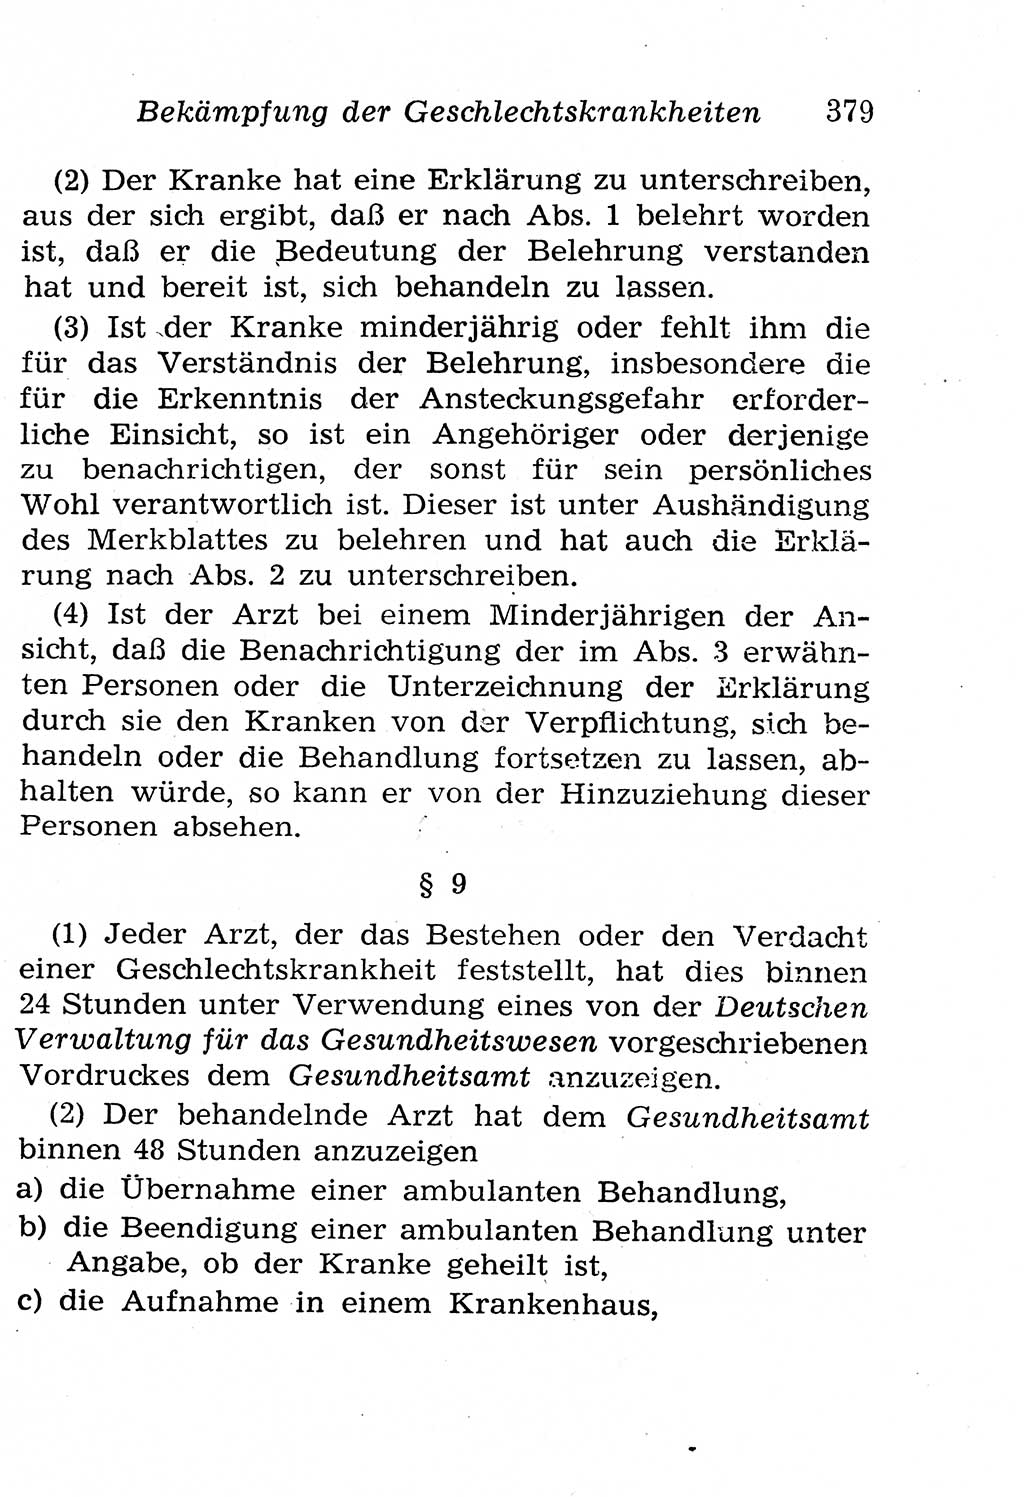 Strafgesetzbuch (StGB) und andere Strafgesetze [Deutsche Demokratische Republik (DDR)] 1958, Seite 379 (StGB Strafges. DDR 1958, S. 379)